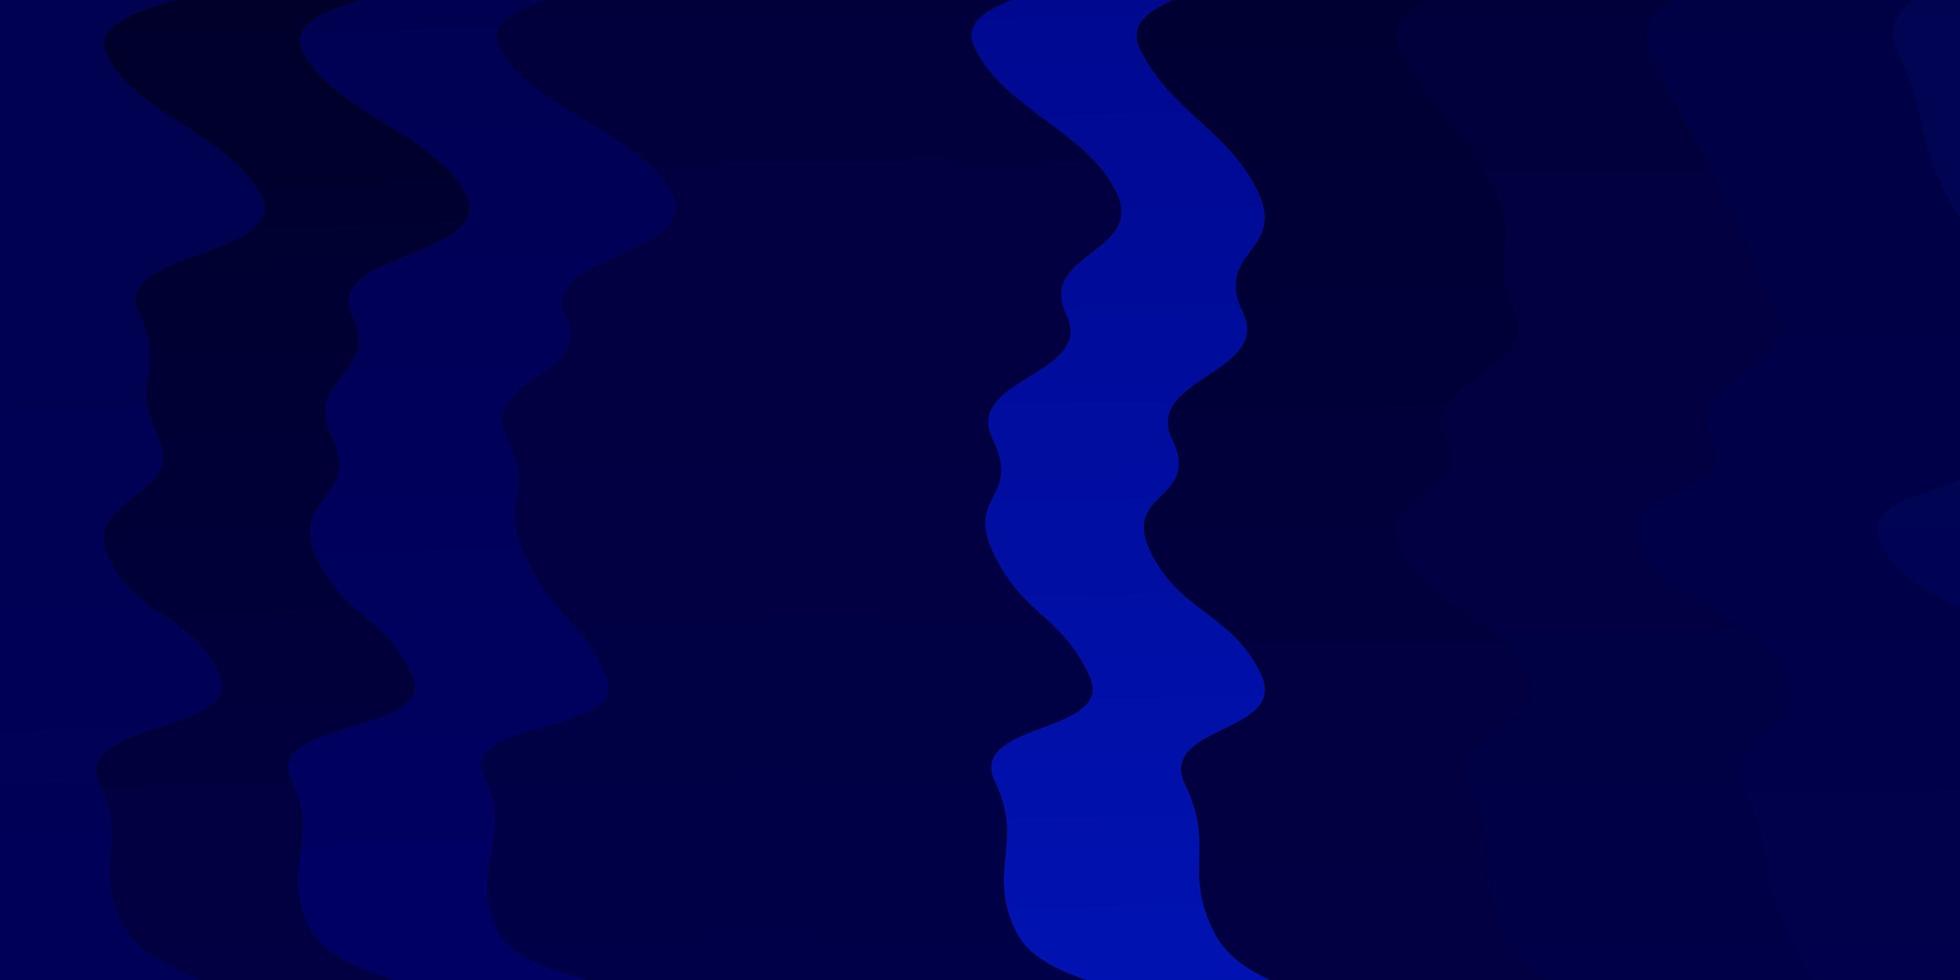 modelo de vetor azul escuro com linhas irônicas. ilustração em estilo de meio-tom com curvas de gradiente. design para a promoção de seus negócios.